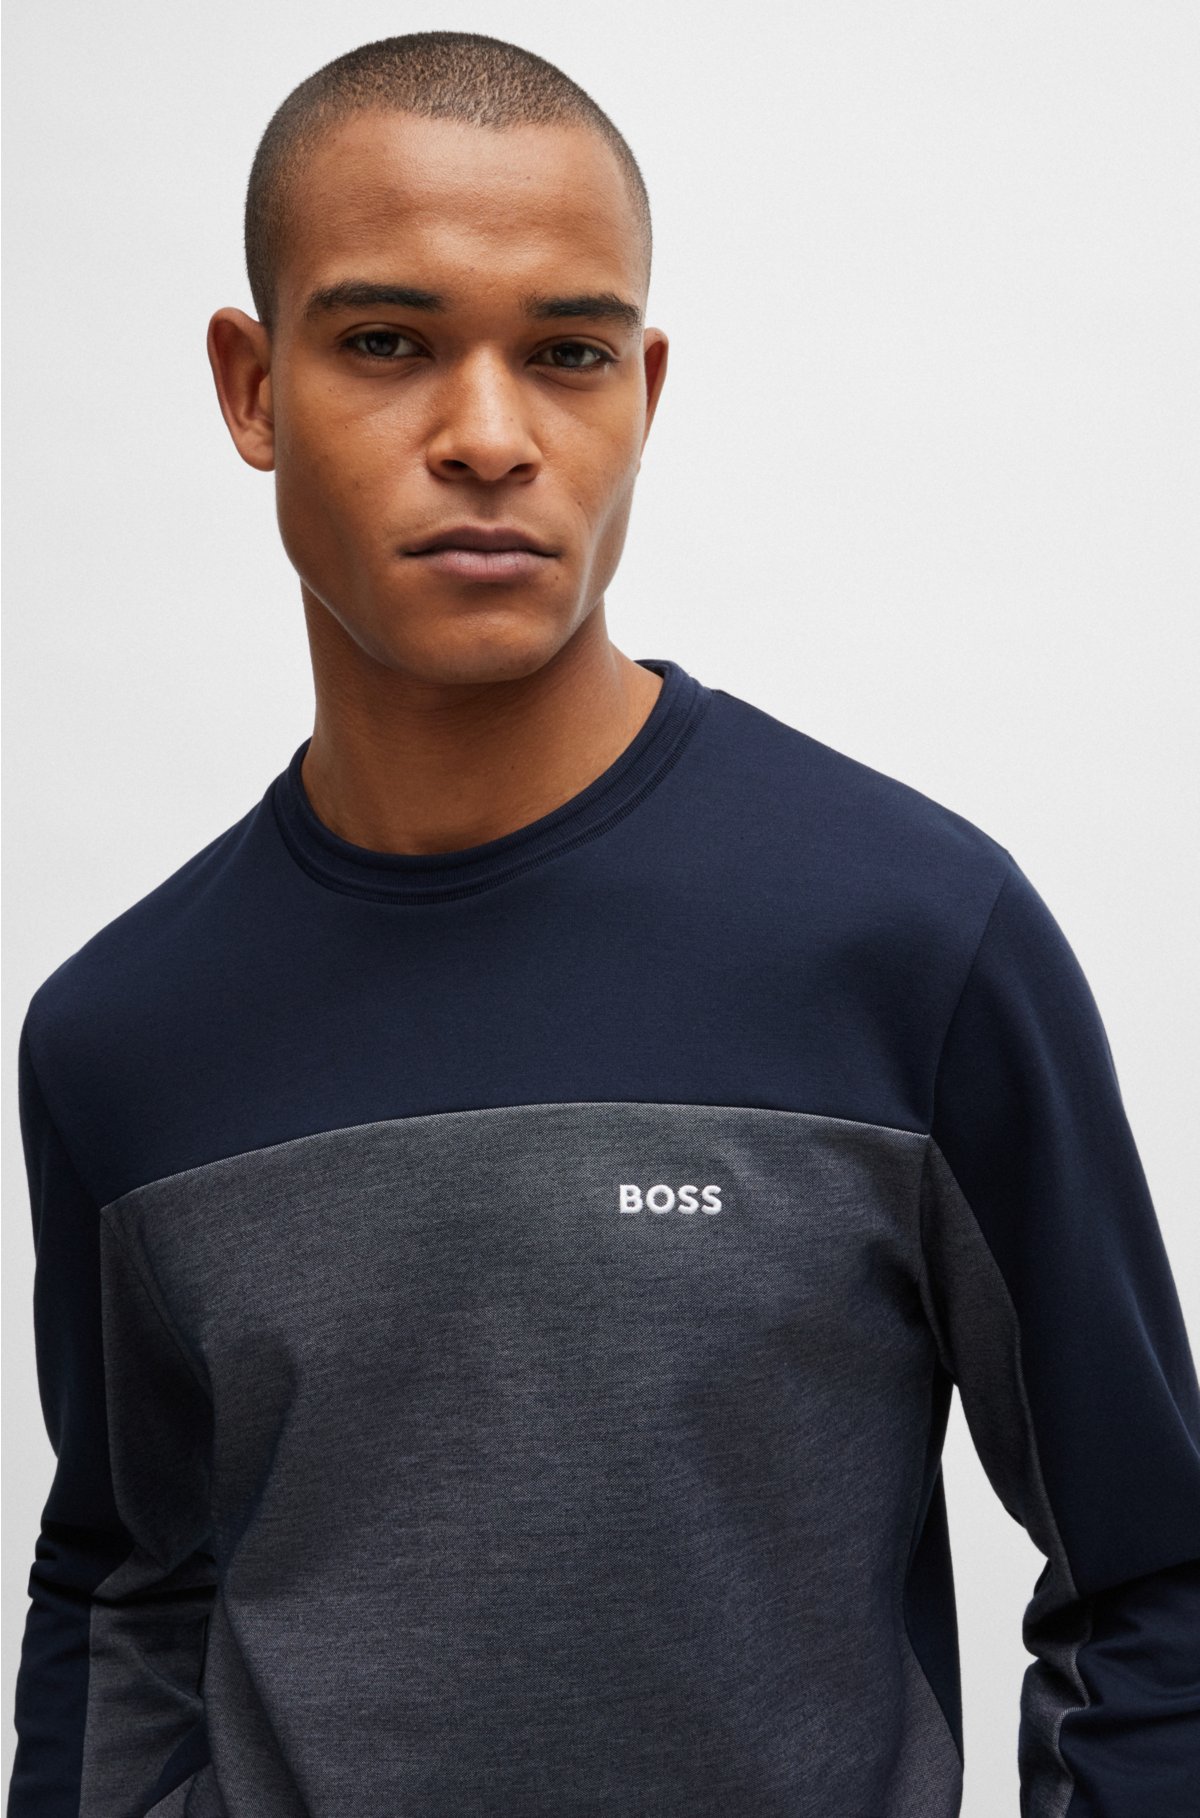 Cotton-blend sweatshirt with embroidered logo, Dark Blue